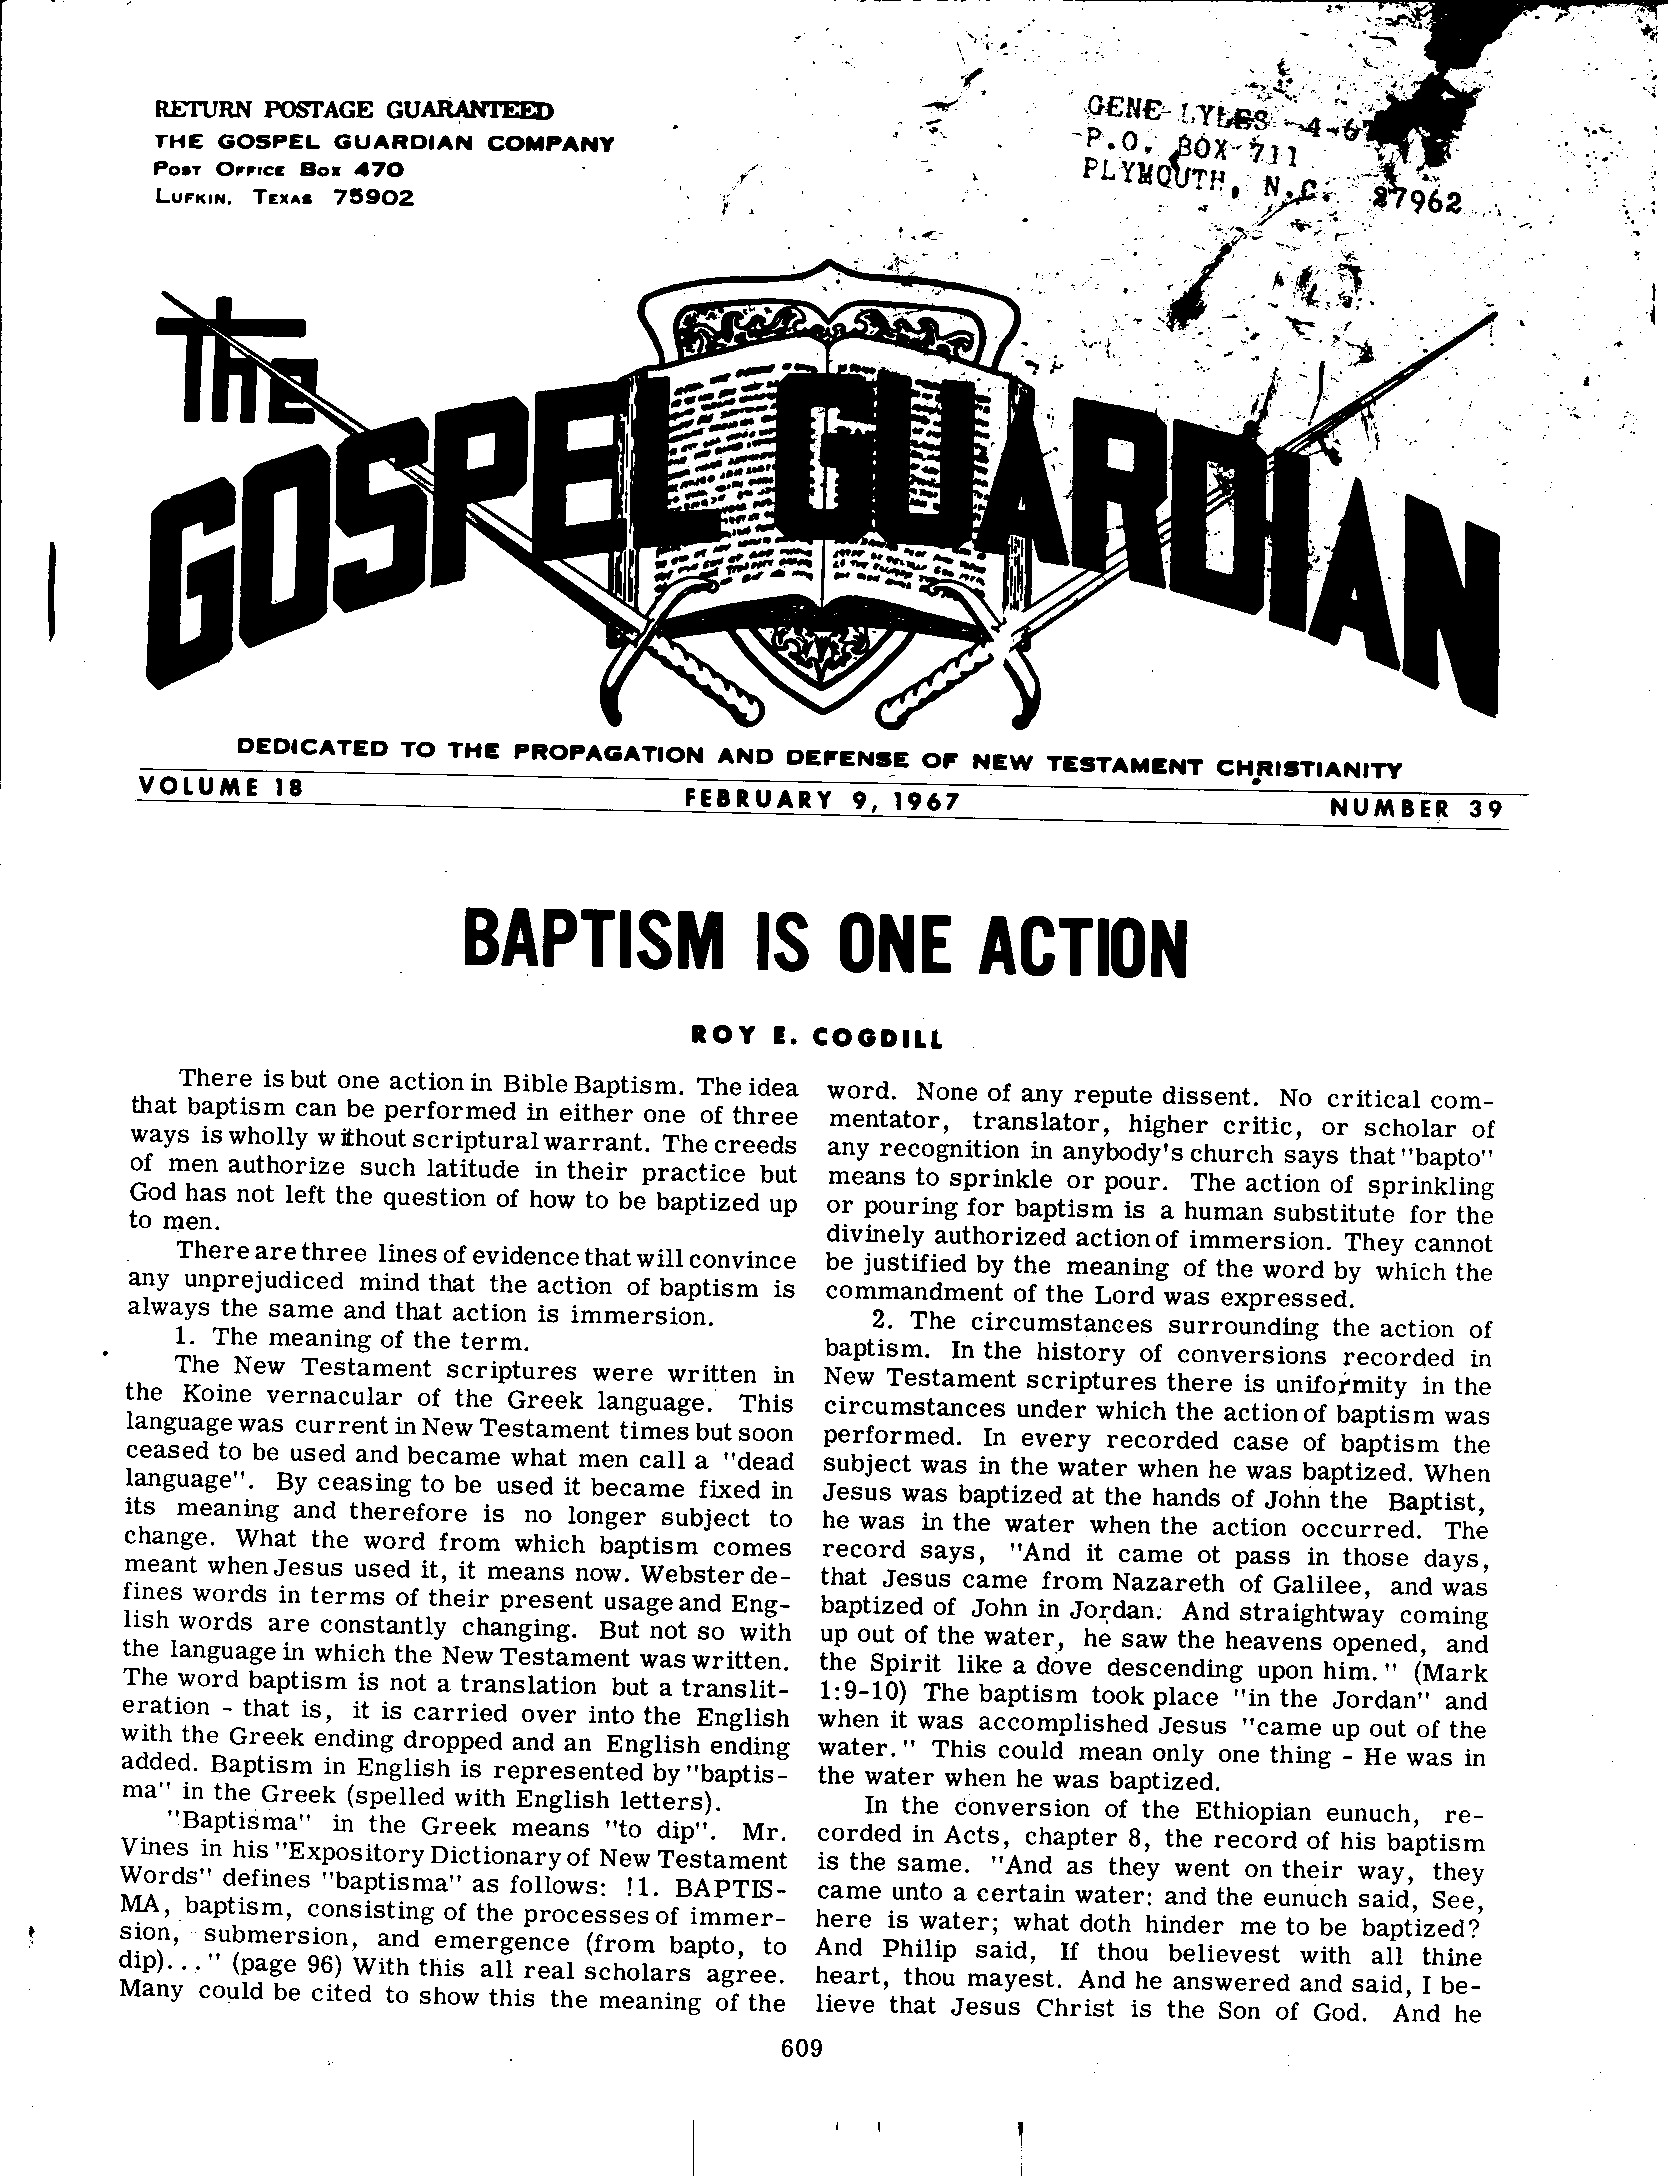 Gospel Guardian Original: Vol.18 No.39 Pg.1